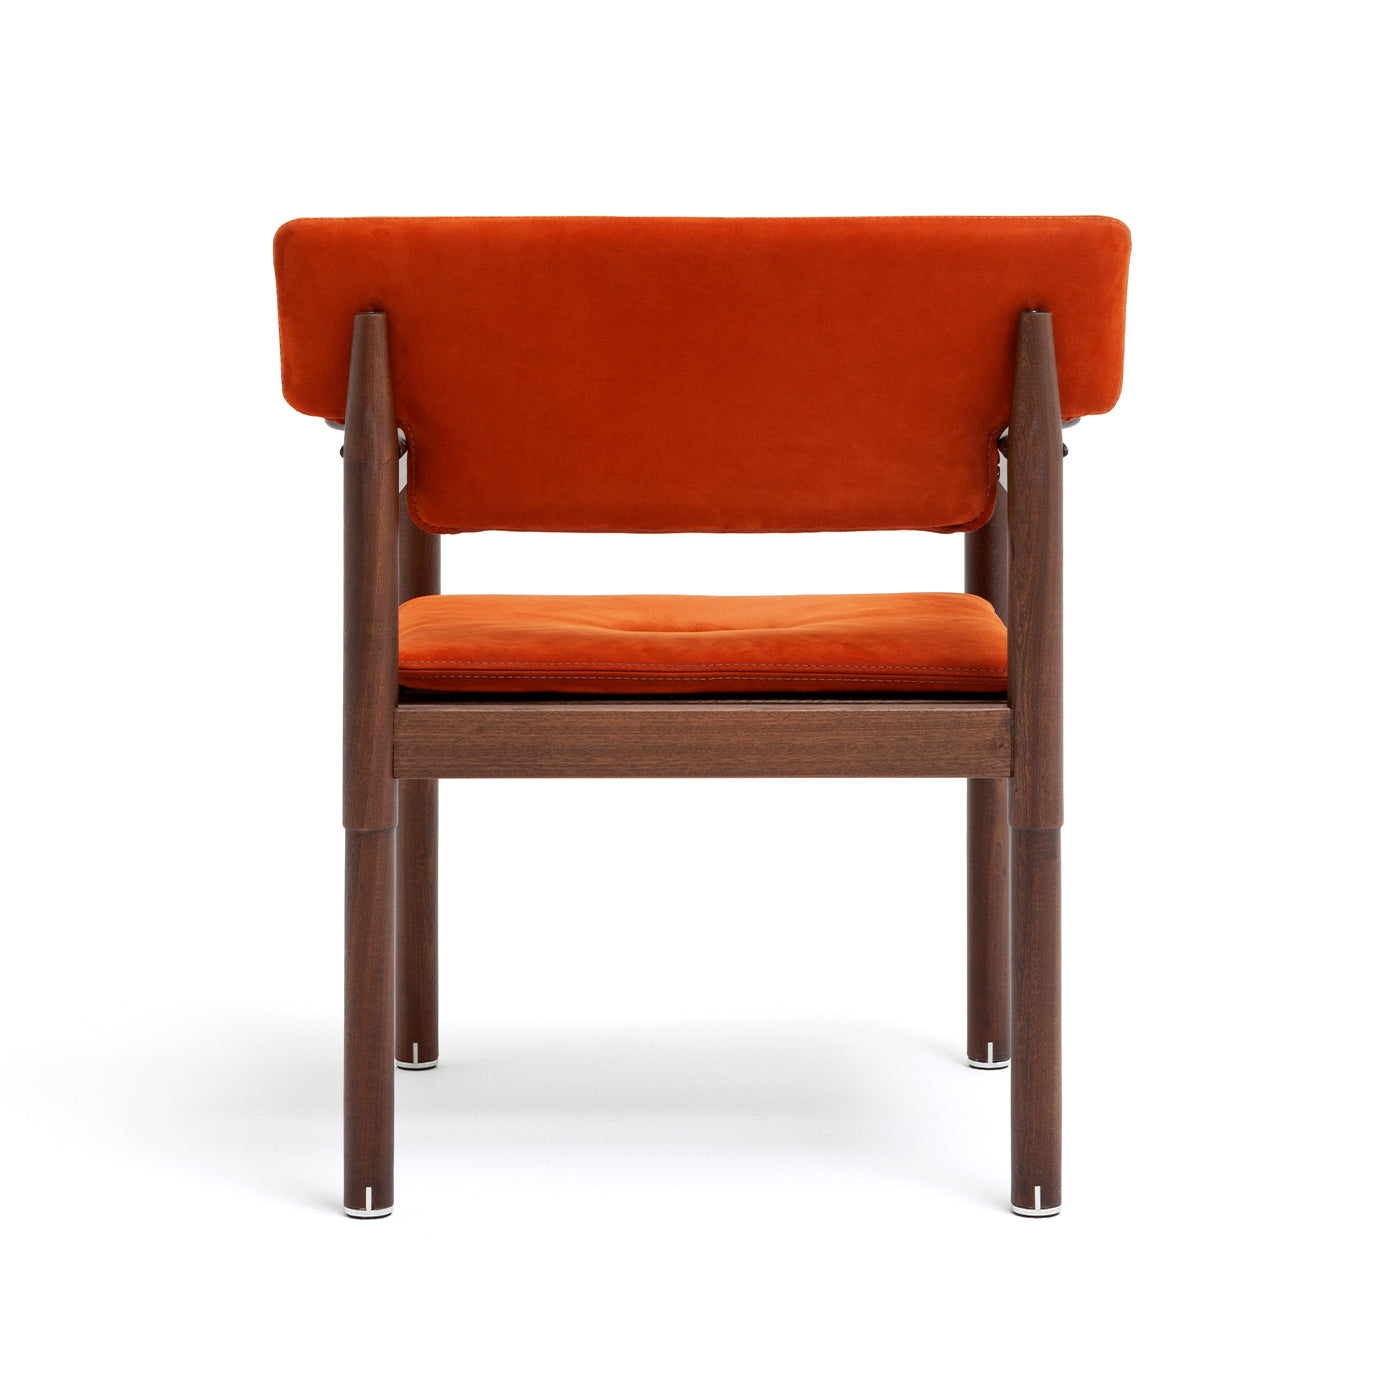 10th Vieste Chair by Massimo Castagna - Alternative view 4